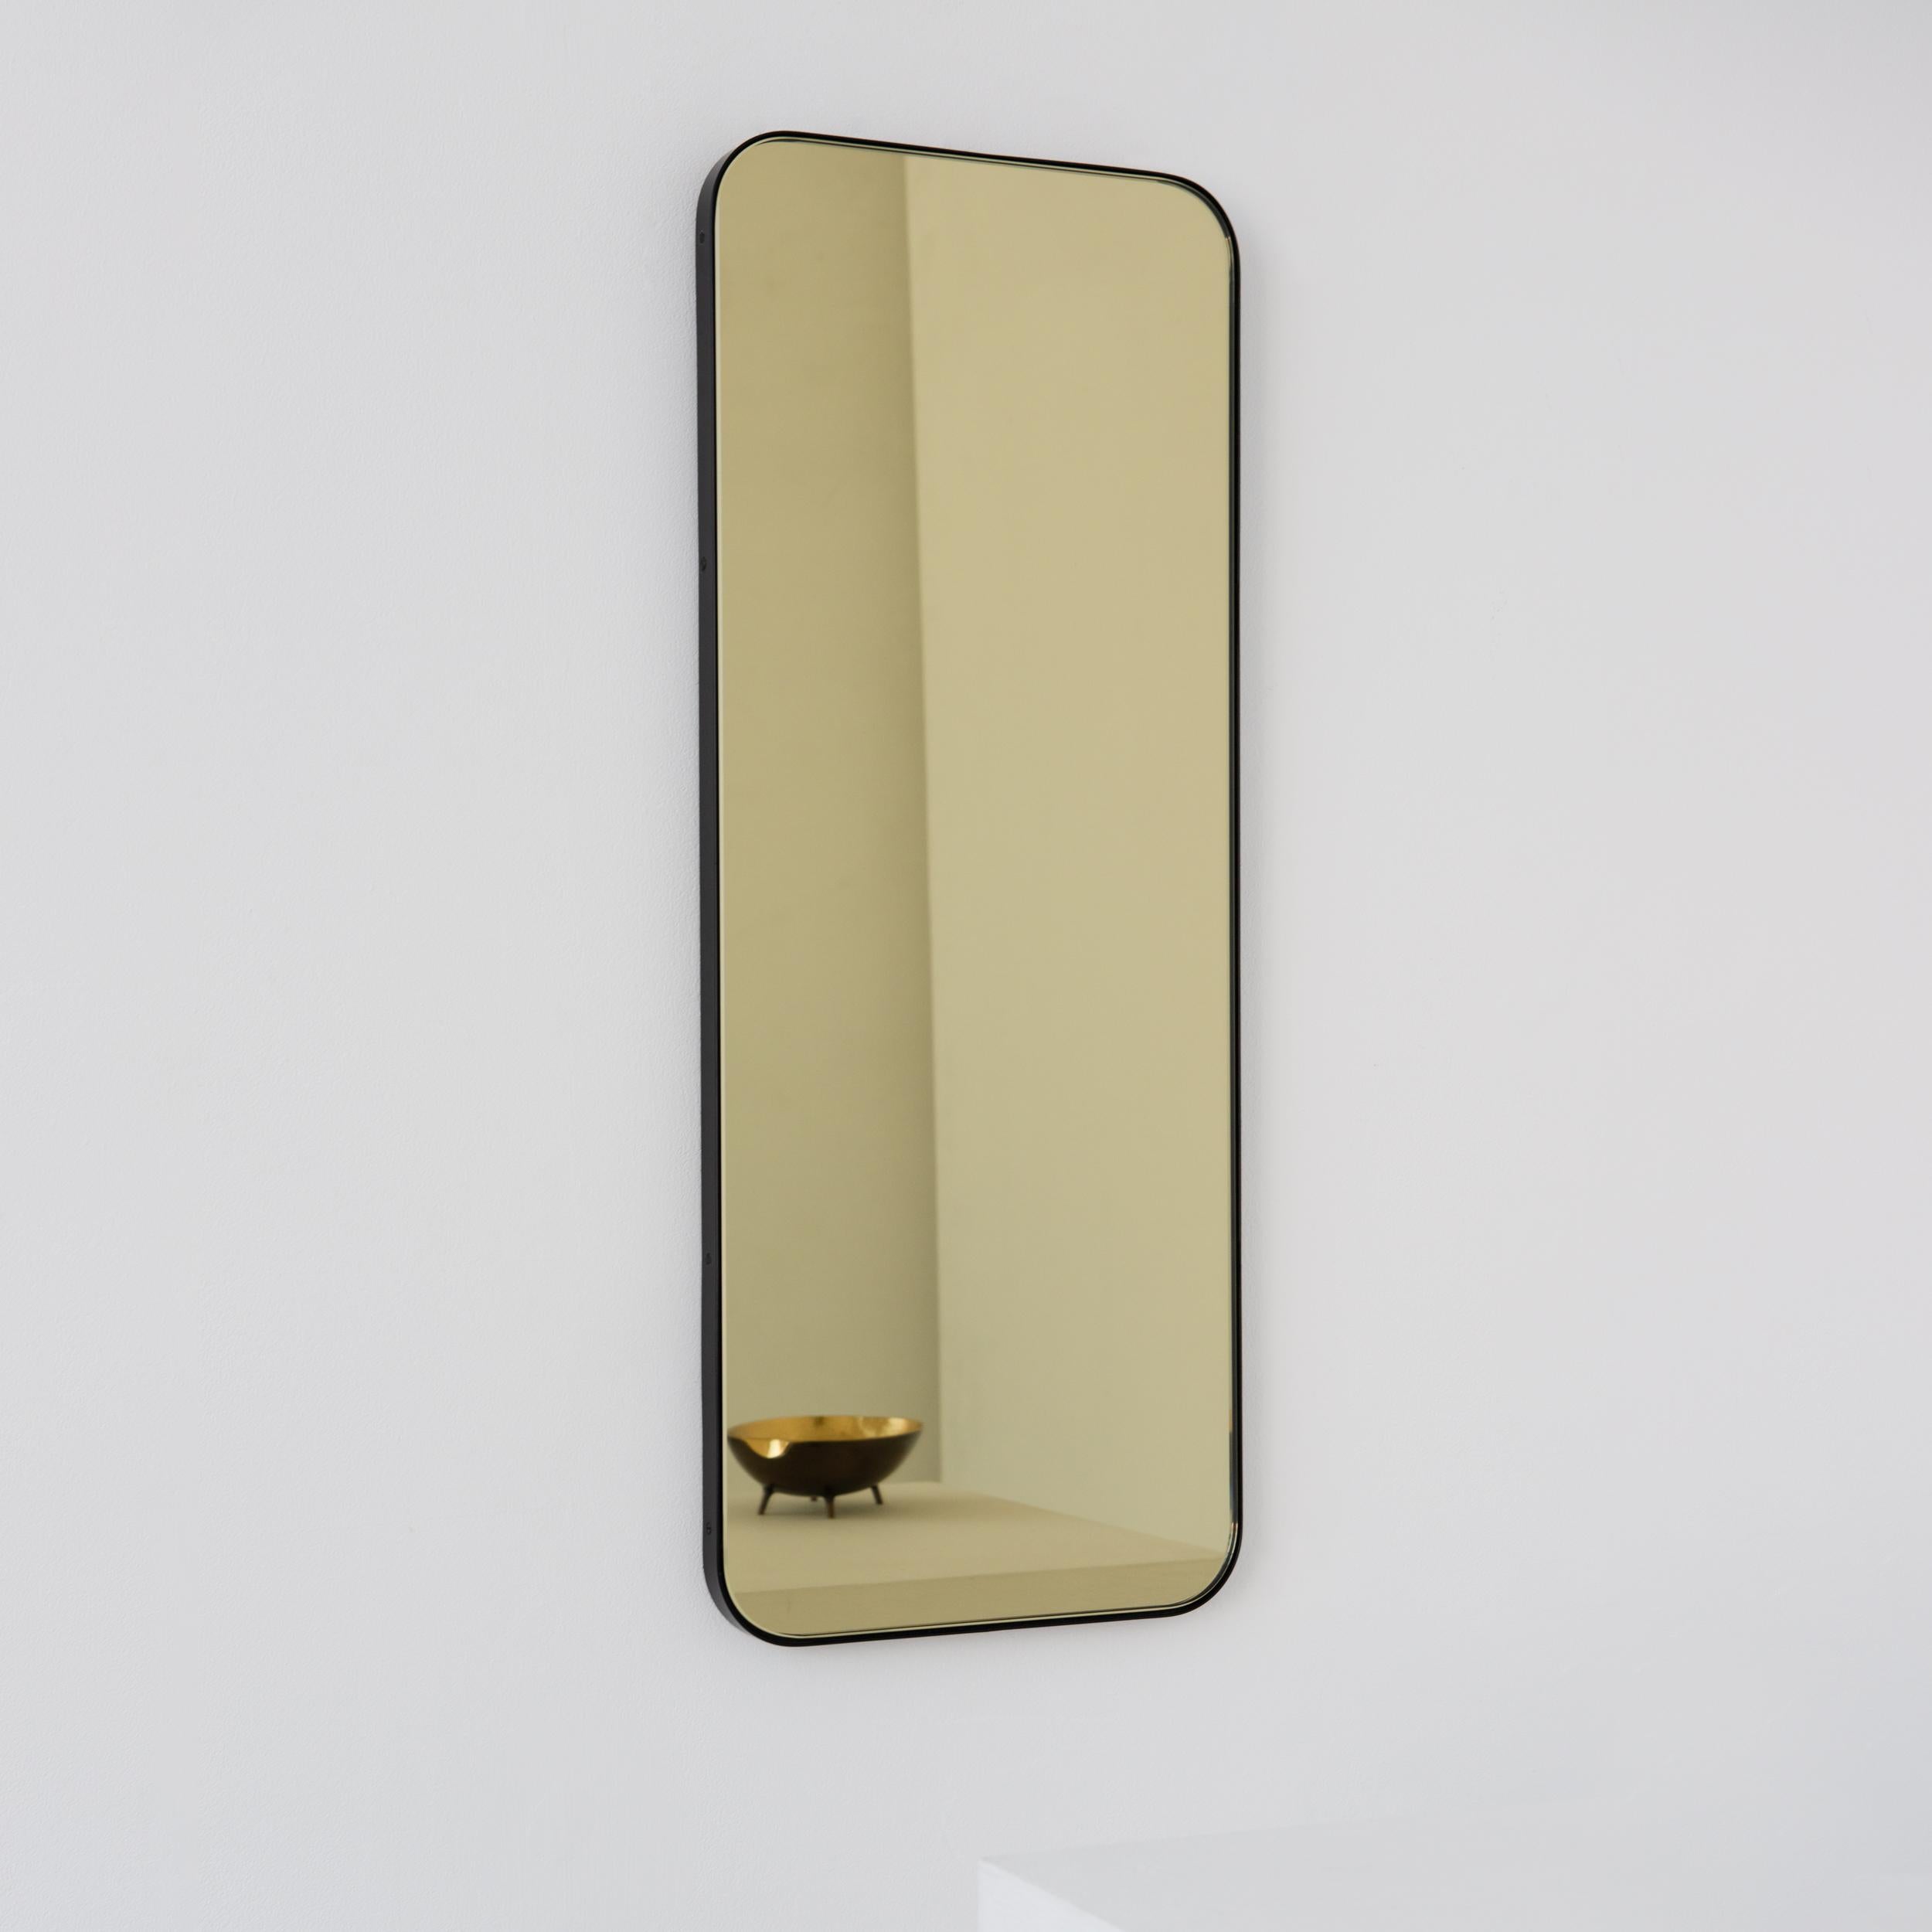 Miroir rectangulaire moderne teinté d'or avec un cadre noir élégant. Une partie de la charmante collection Quadris, conçue et fabriquée à la main à Londres, au Royaume-Uni. 

Fourni avec une barre en z spécialisée pour une installation facile. Un